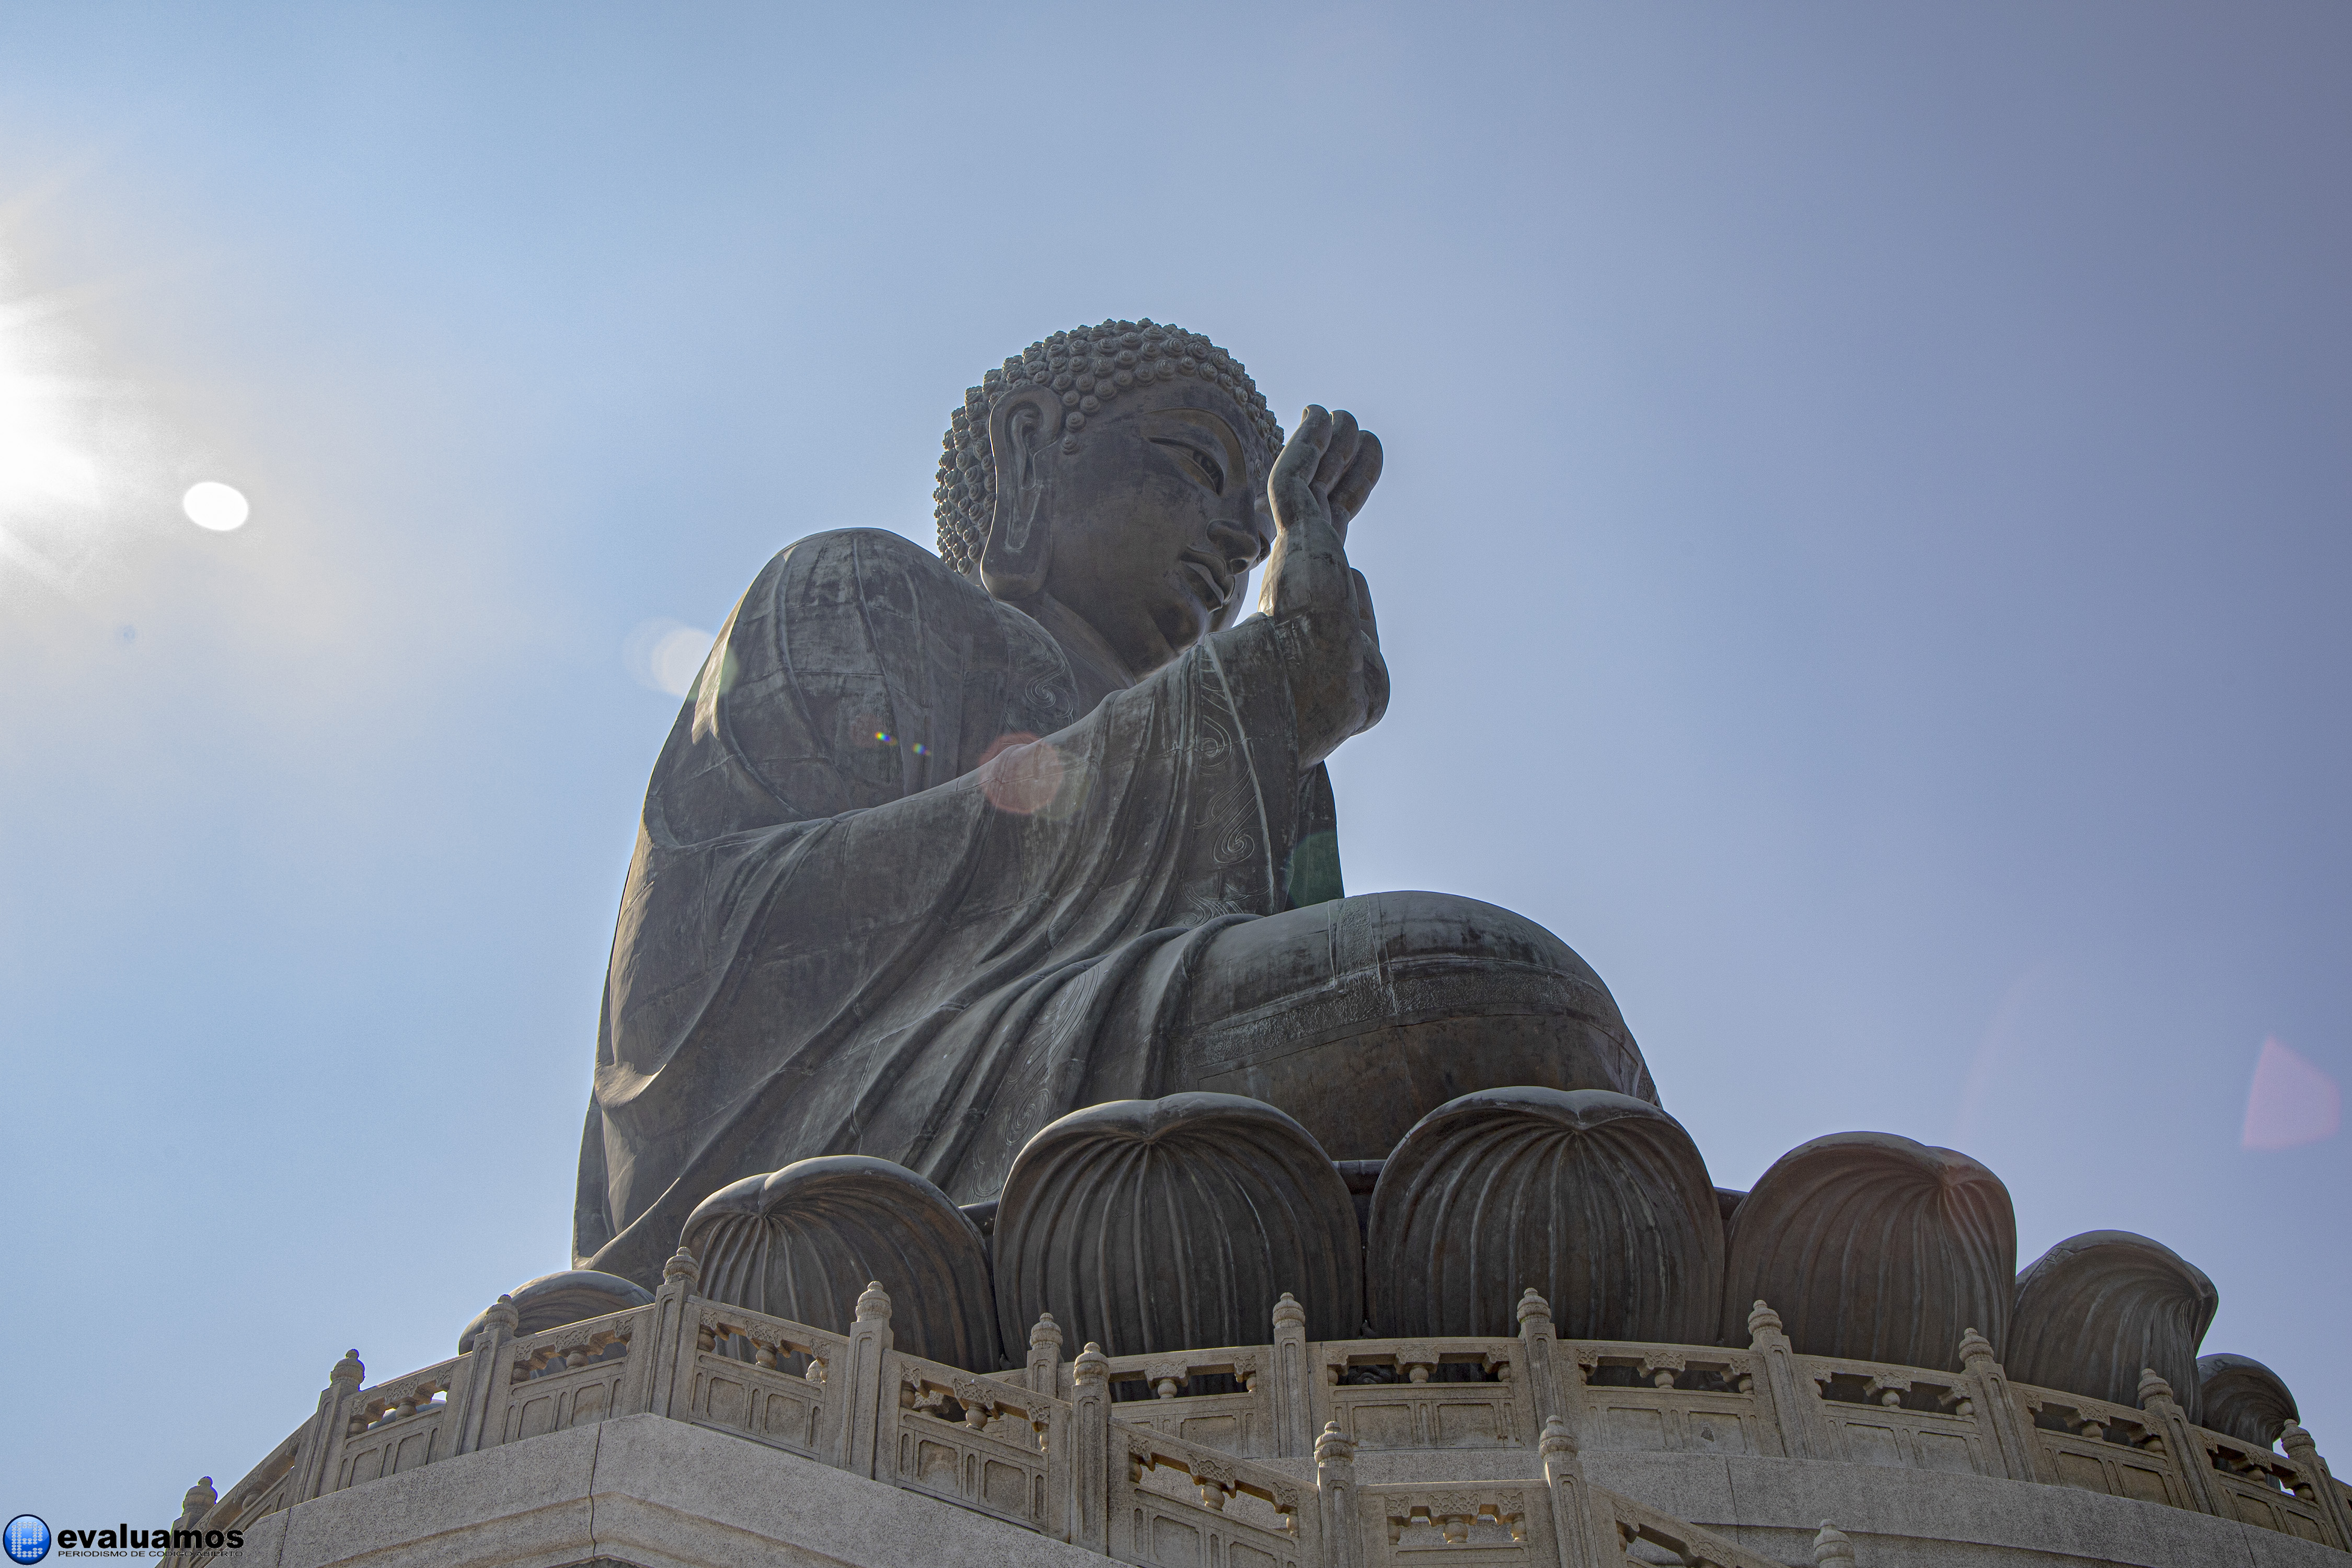 Fotos del día – Buda Gigante de bronce Tian Tan